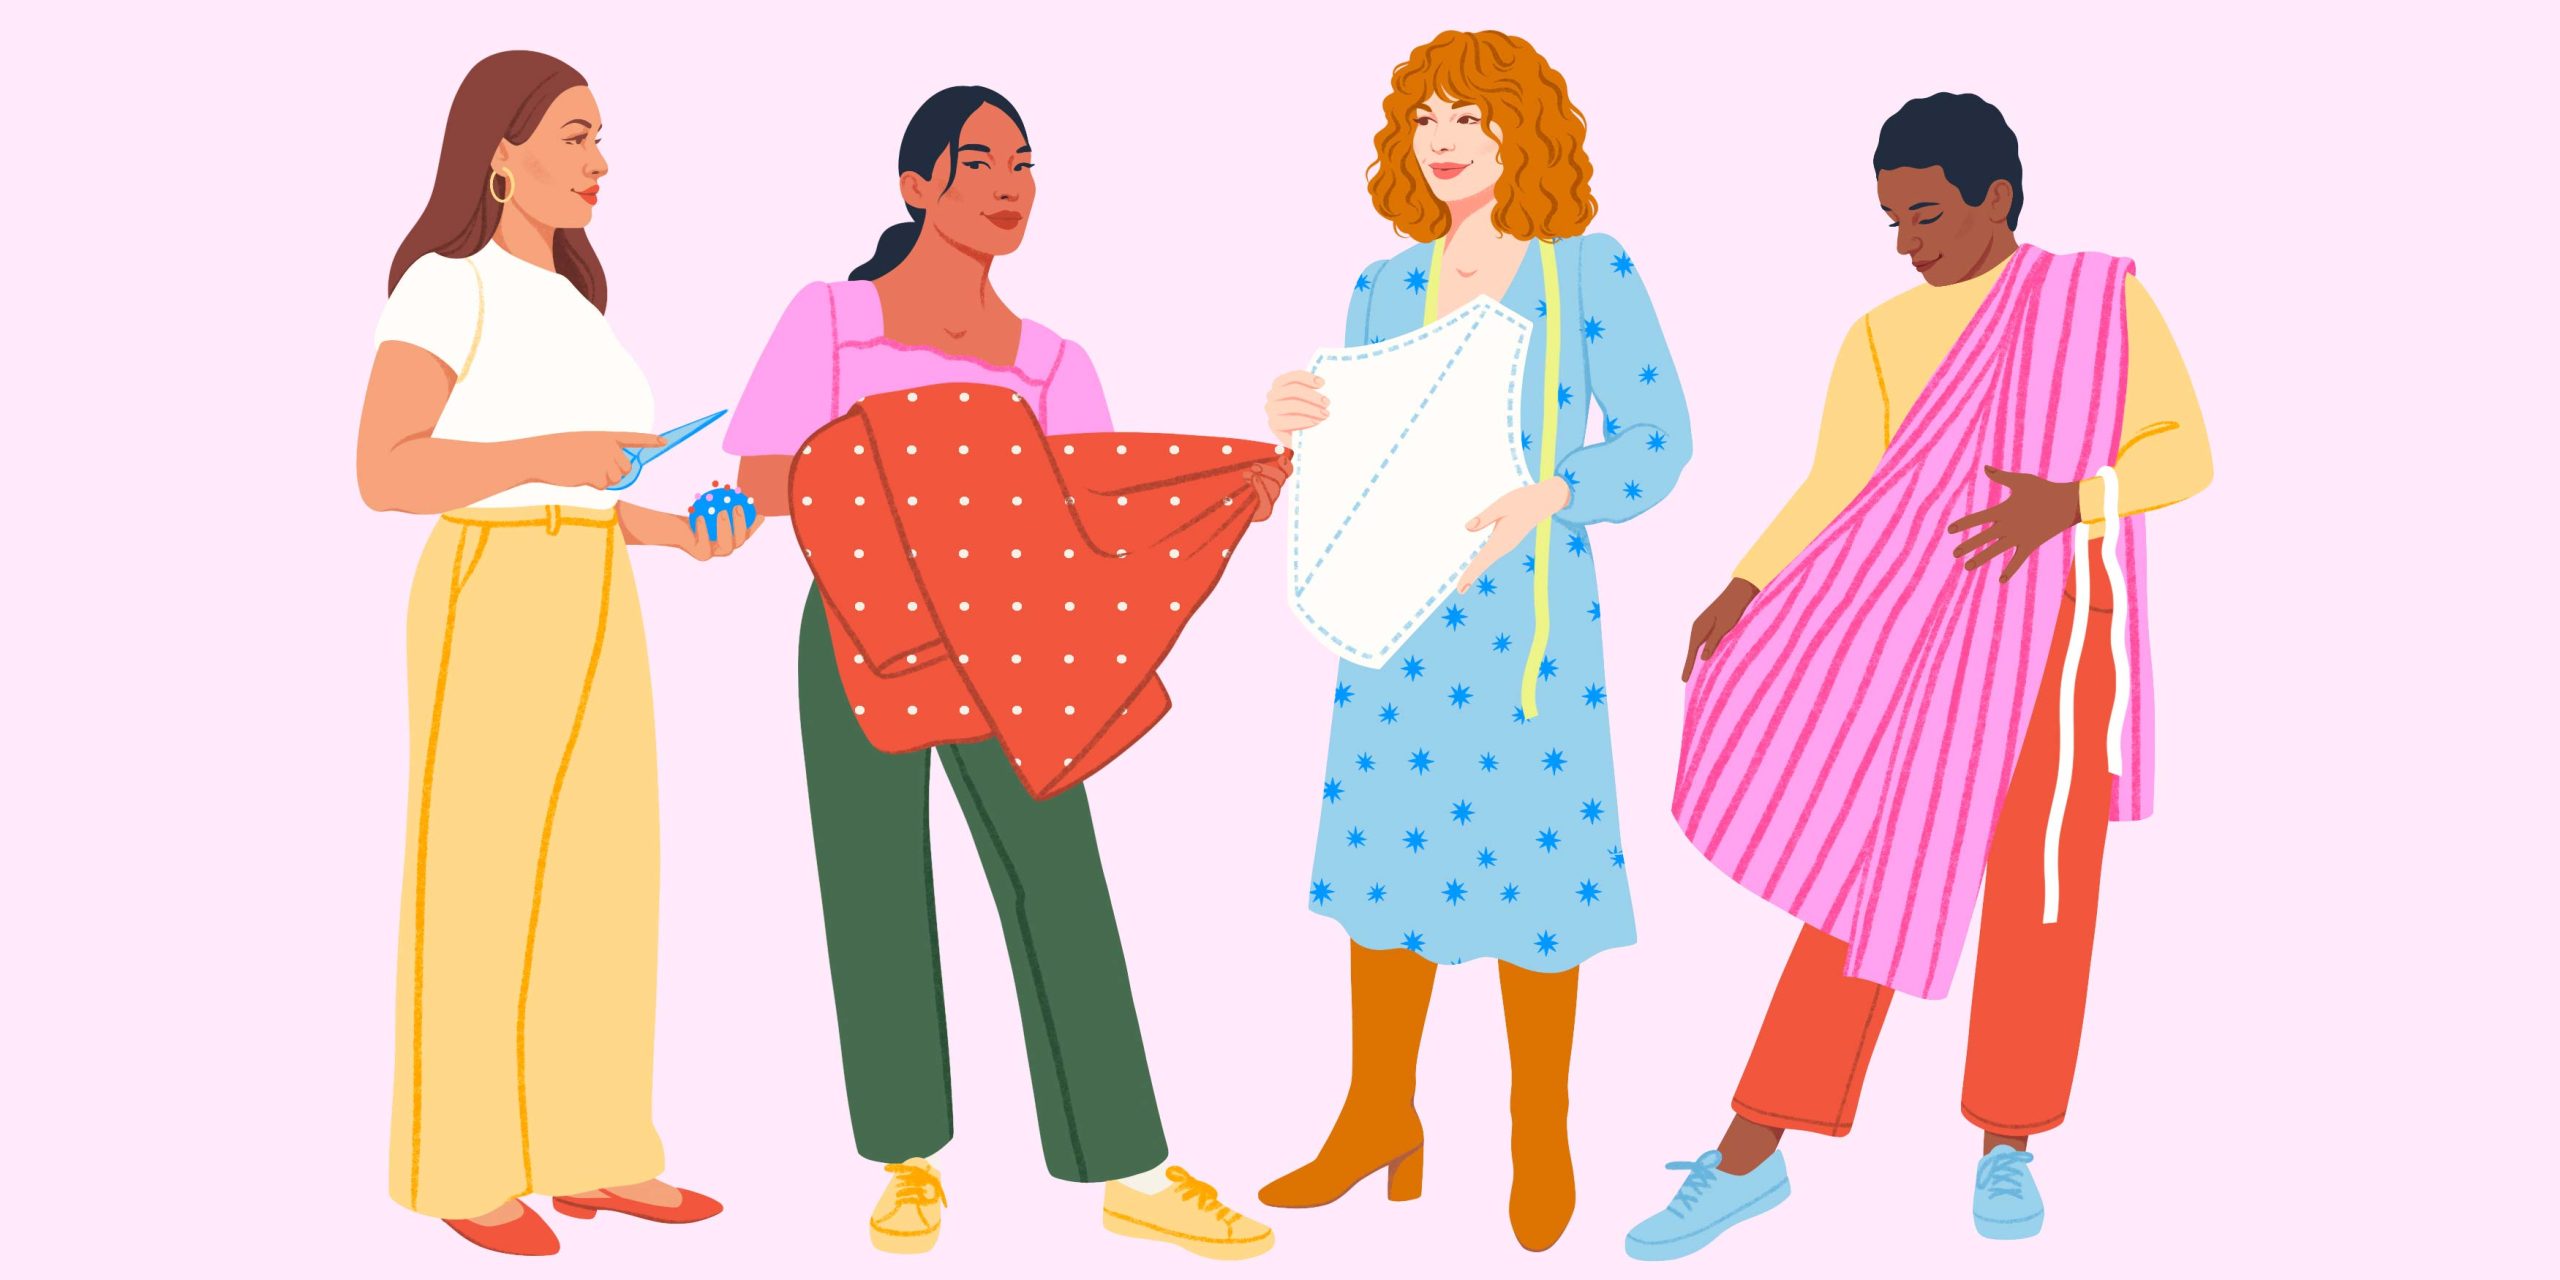 Vier Frauen zeigen sich gegenseitig ihre selbst genähten Kleidungsstücke